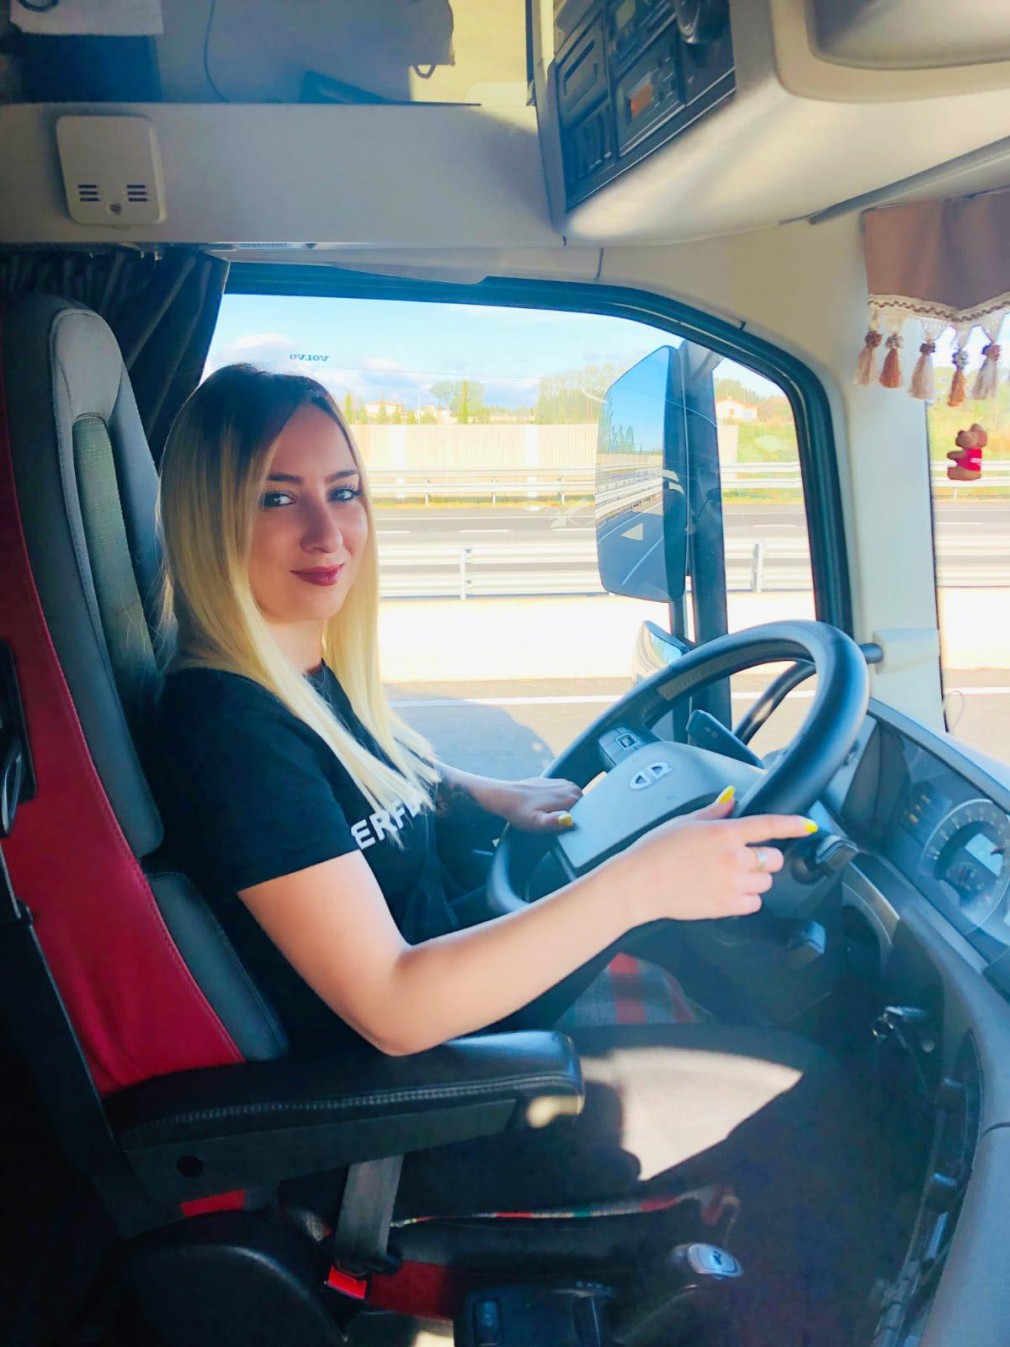 Șoferiță de camion cu 400 mii urmăritori: Câștig, în echipaj cu soțul meu, 5000 euro/lună